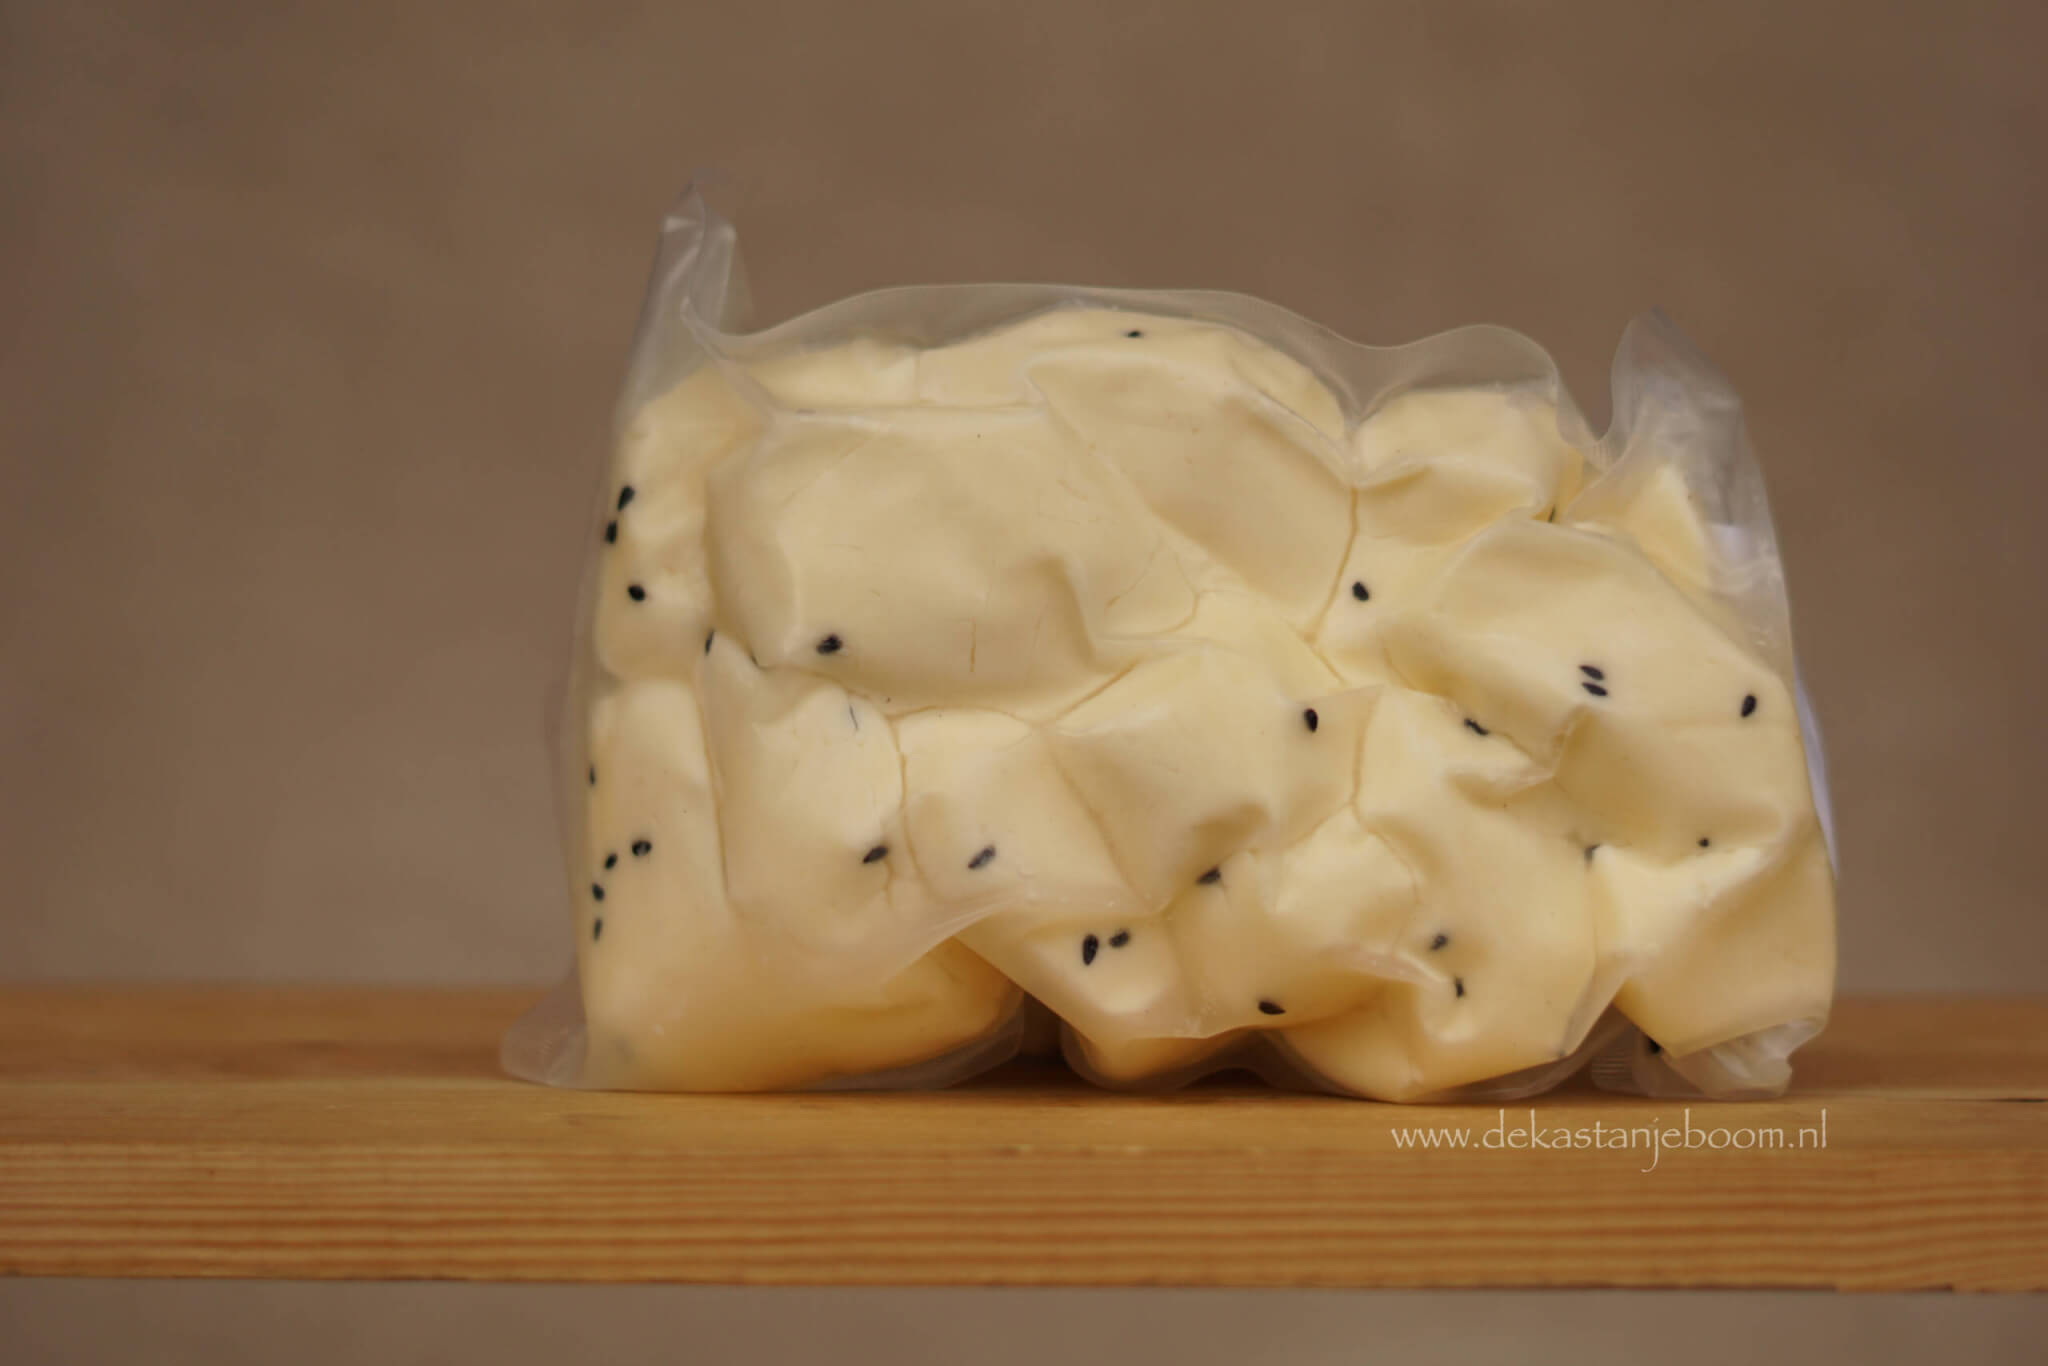 Syrische kaas uit Leusden